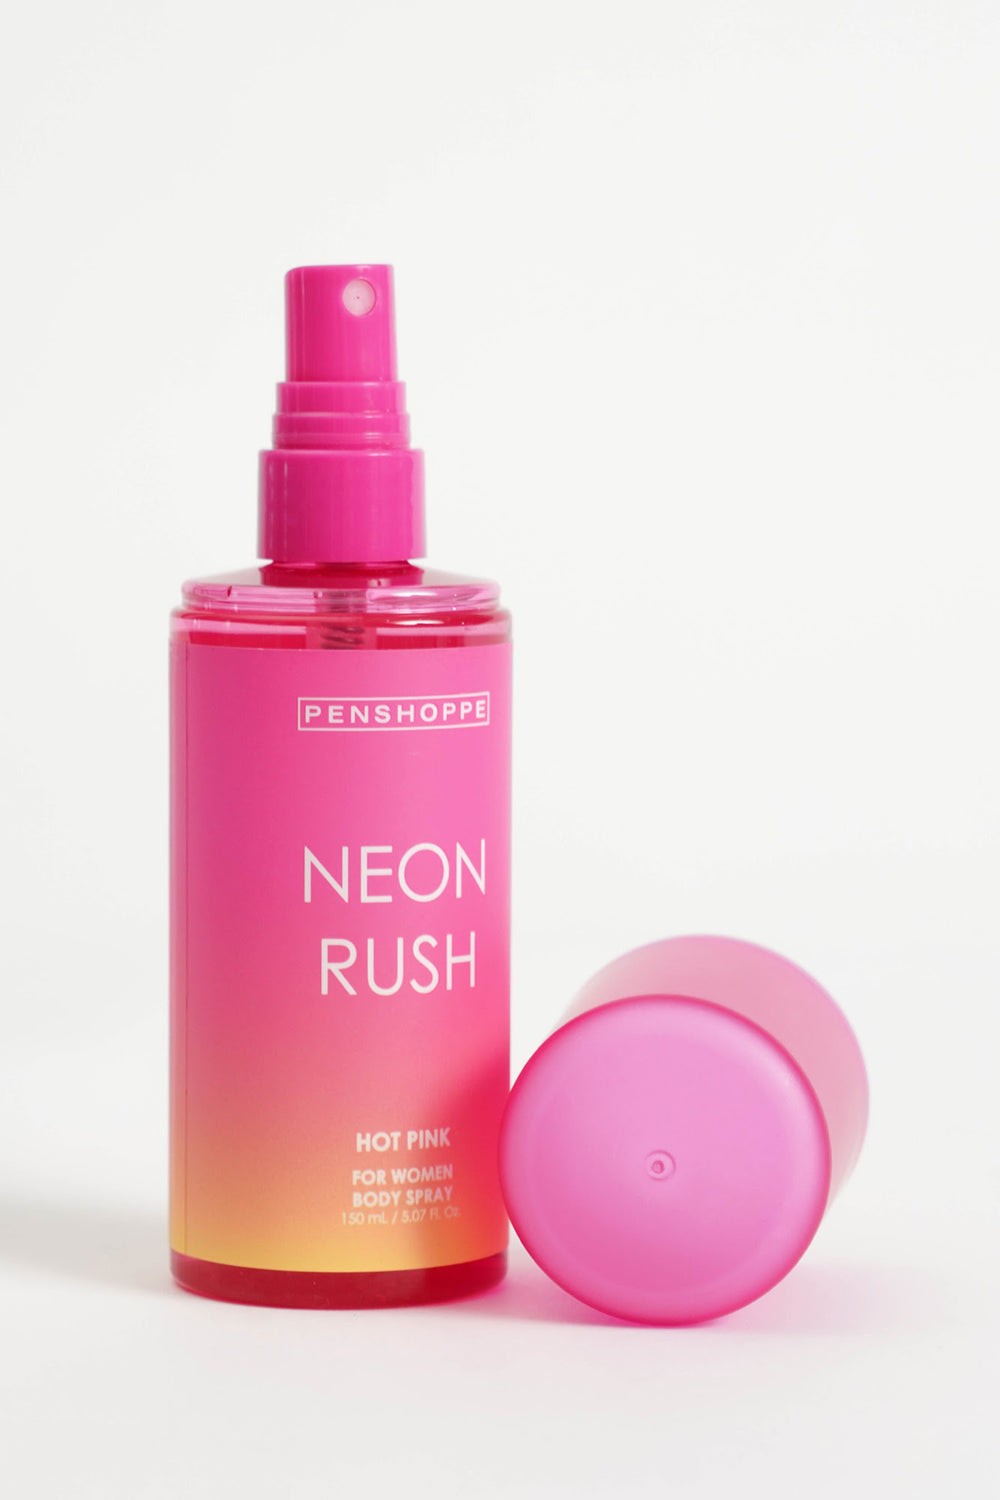 Neon Rush Body Spray for Women 150ML